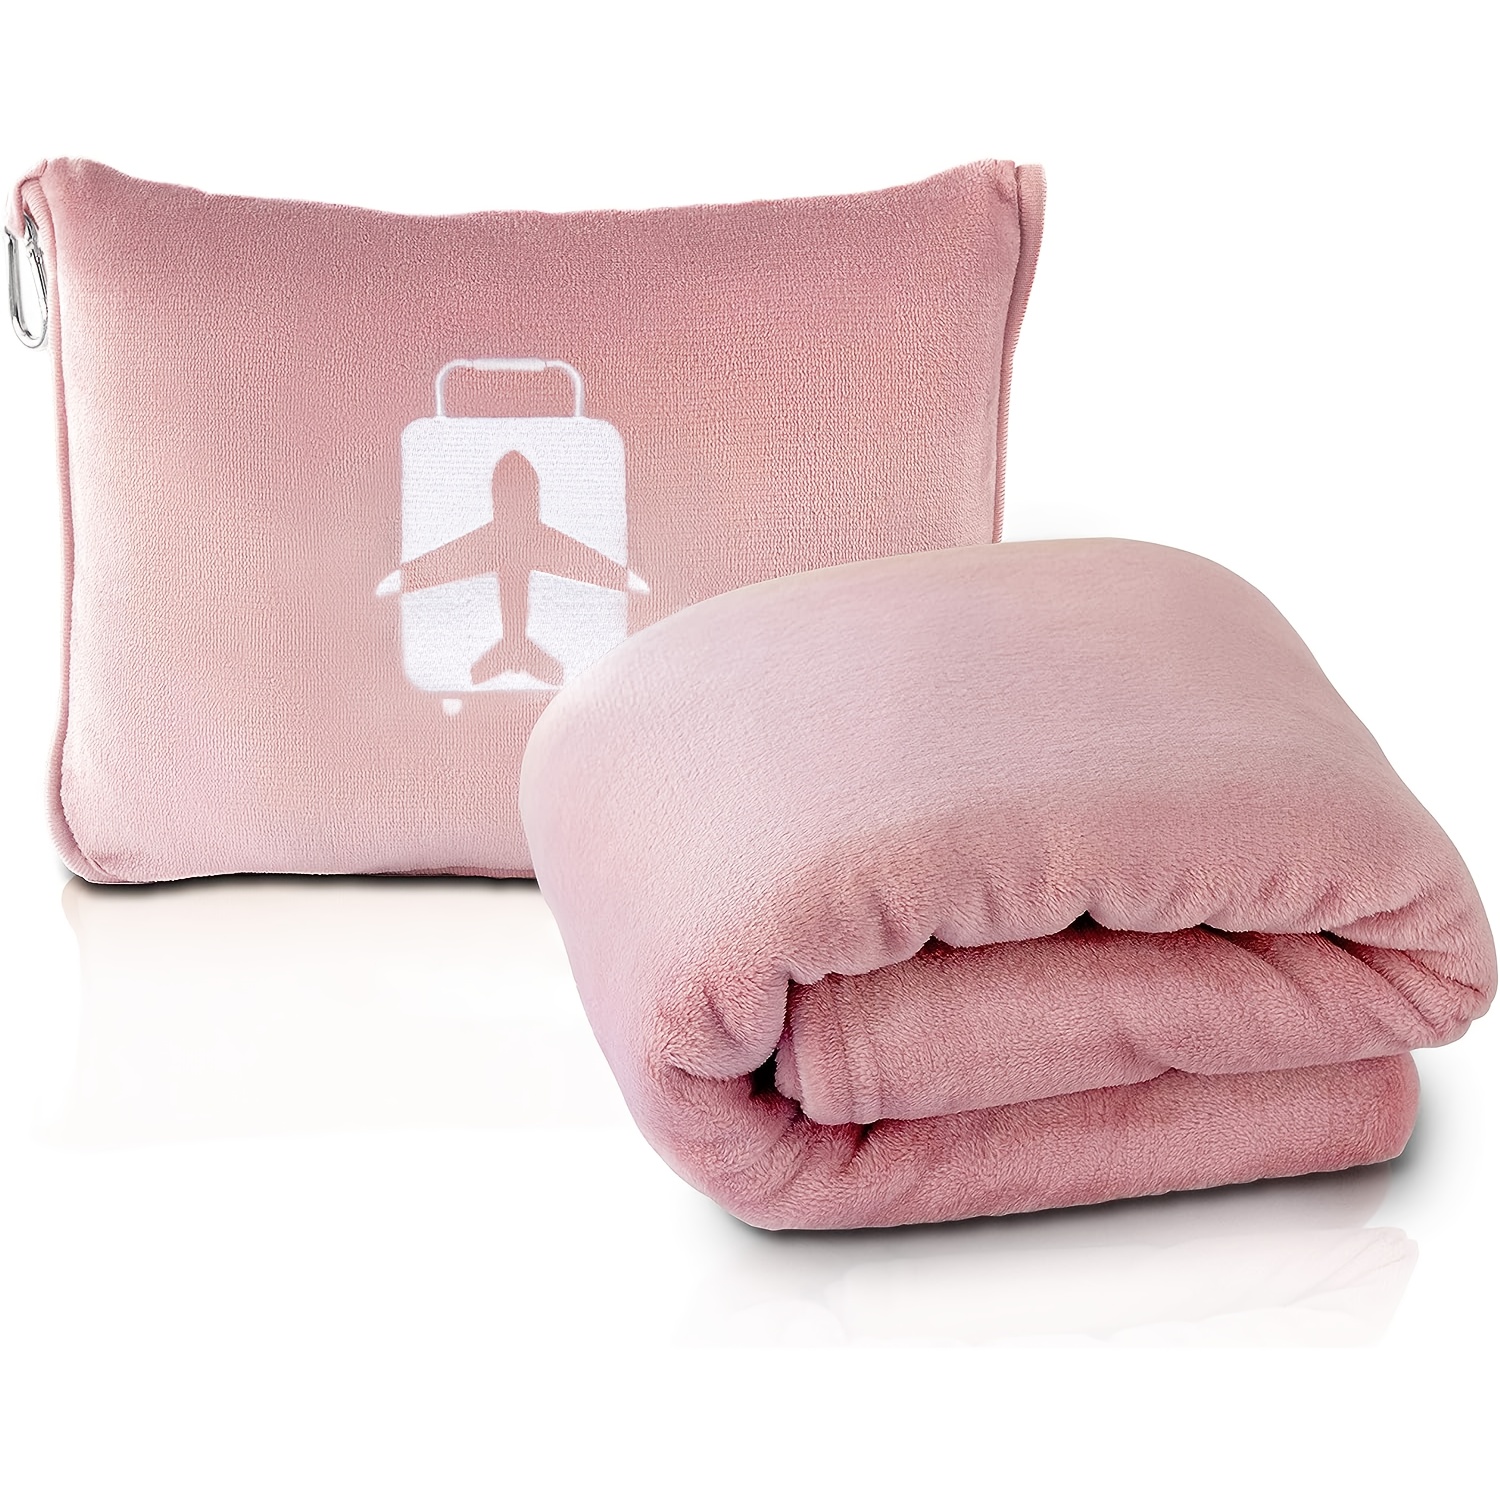 Forte de manta e travesseiro macio com travesseiros e almofadas em